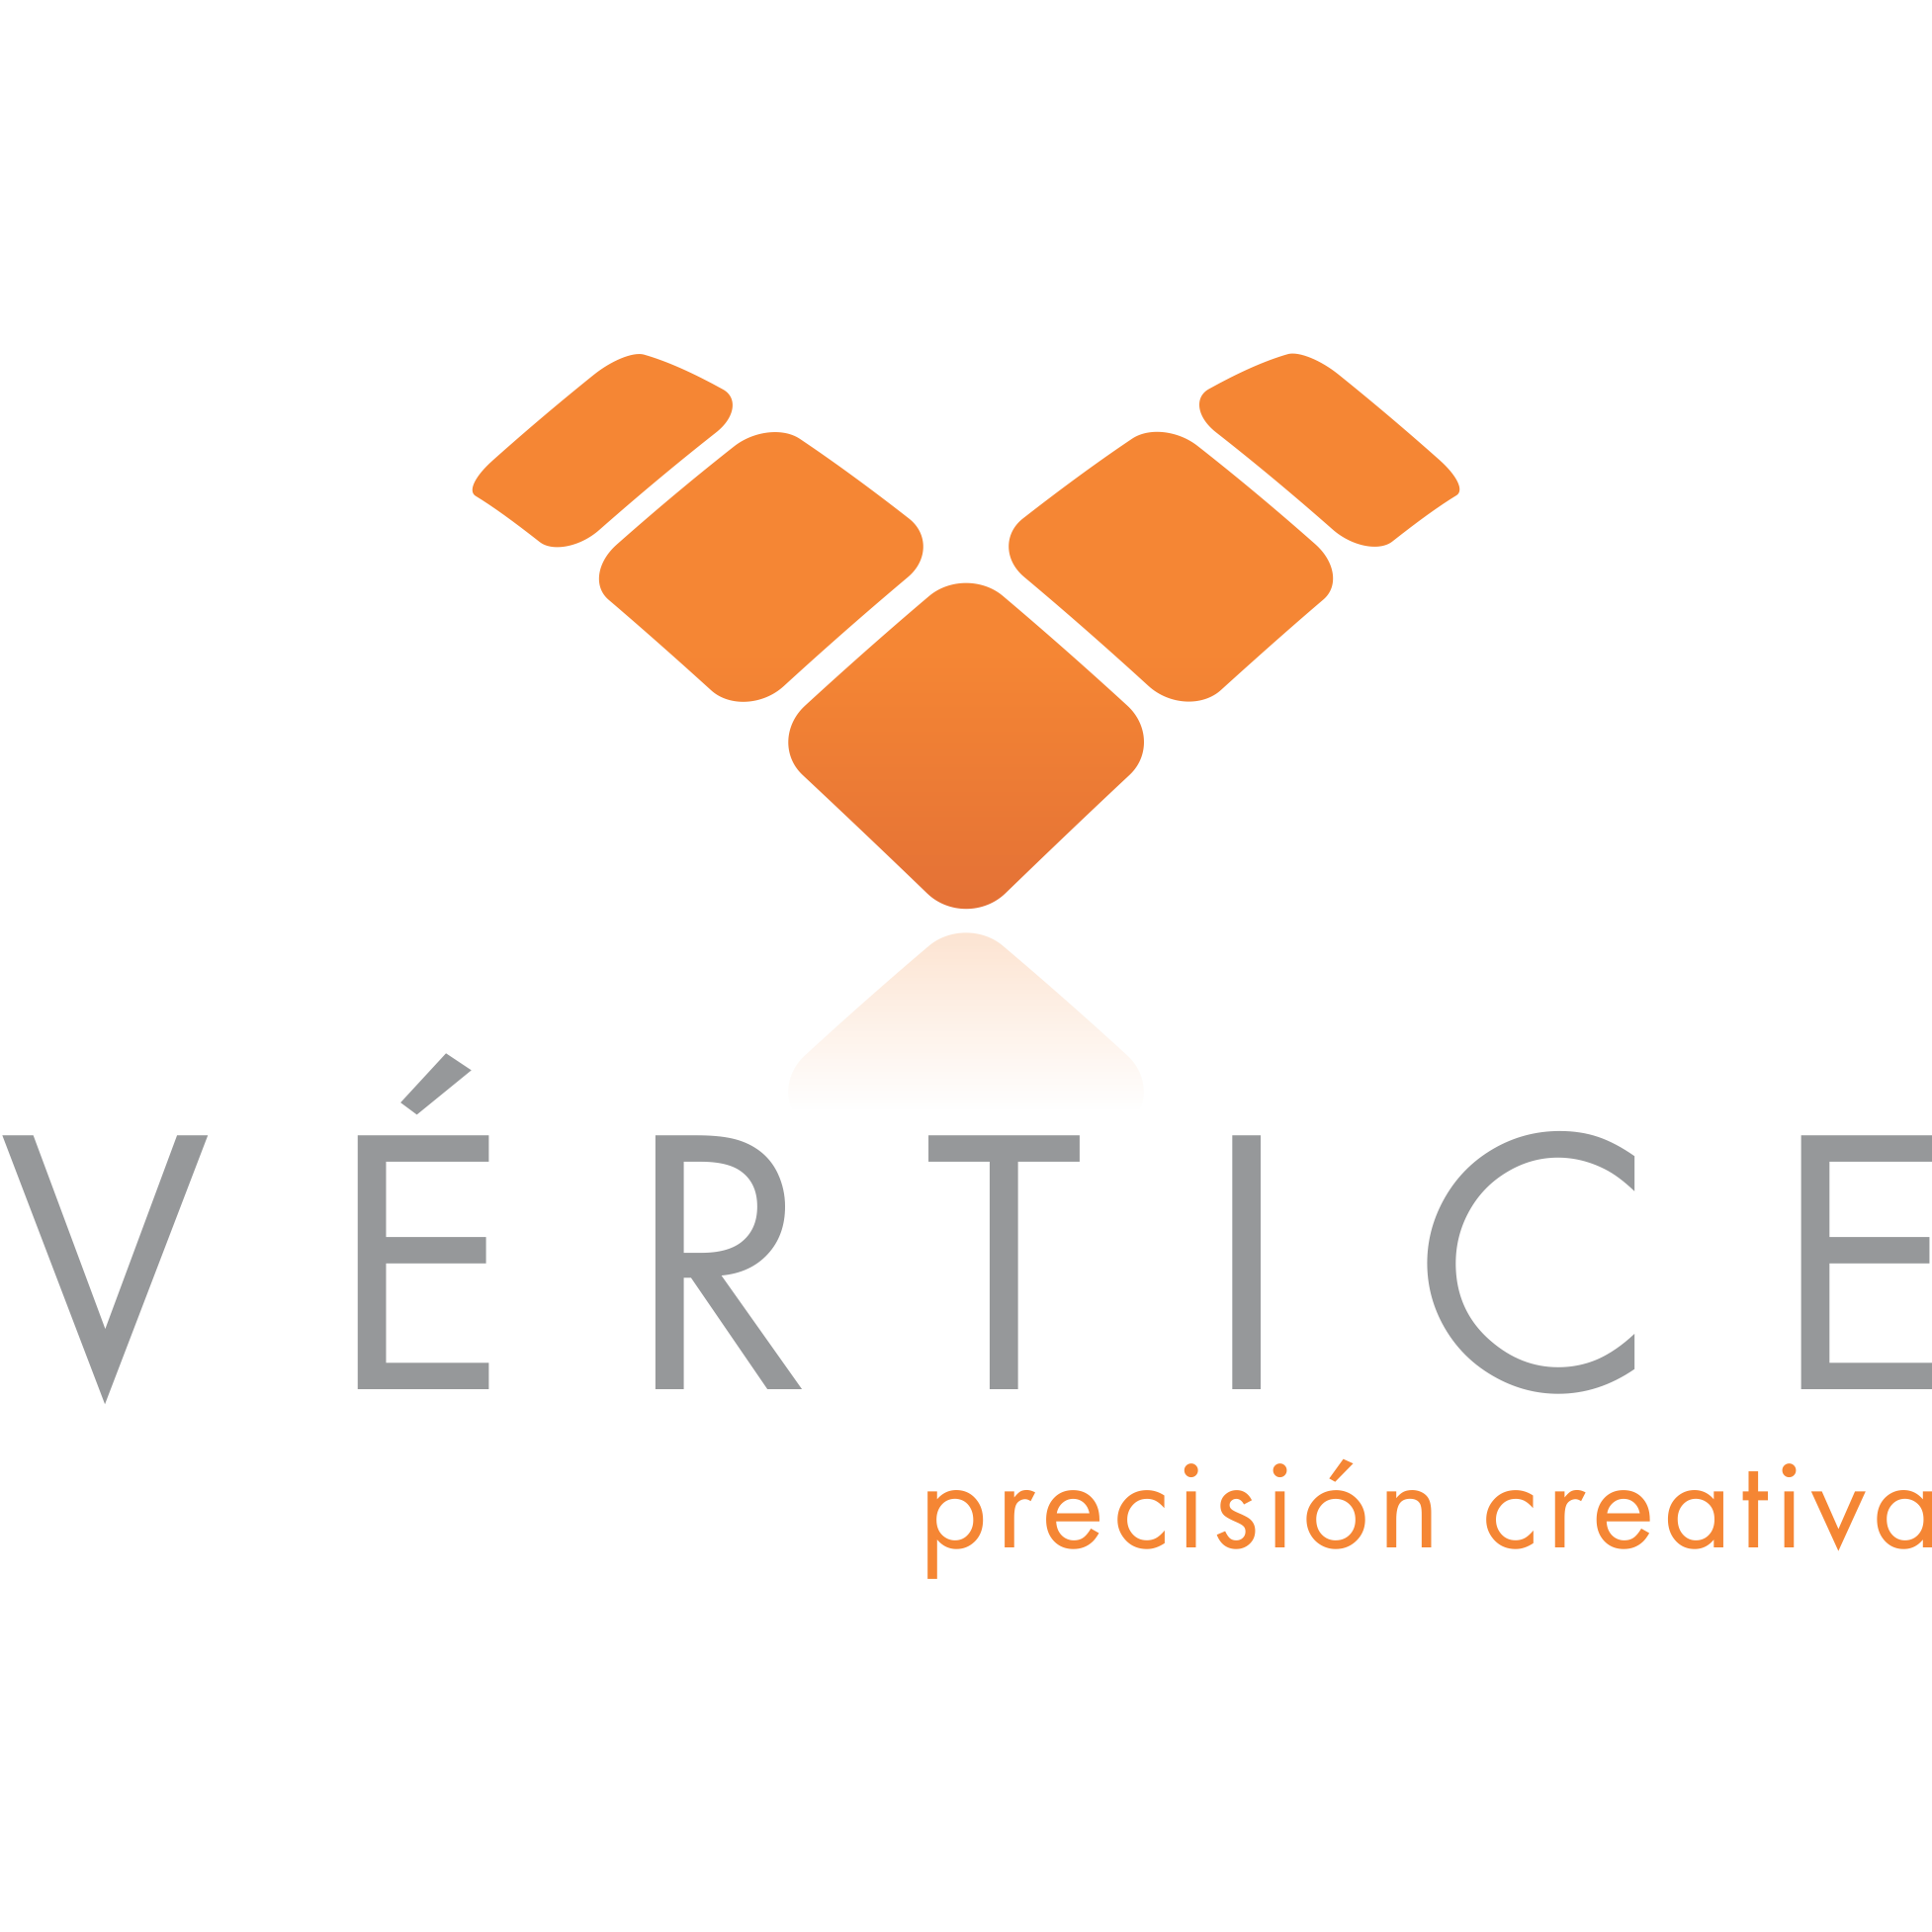 Vértice Precisión Creativa profile on Qualified.One